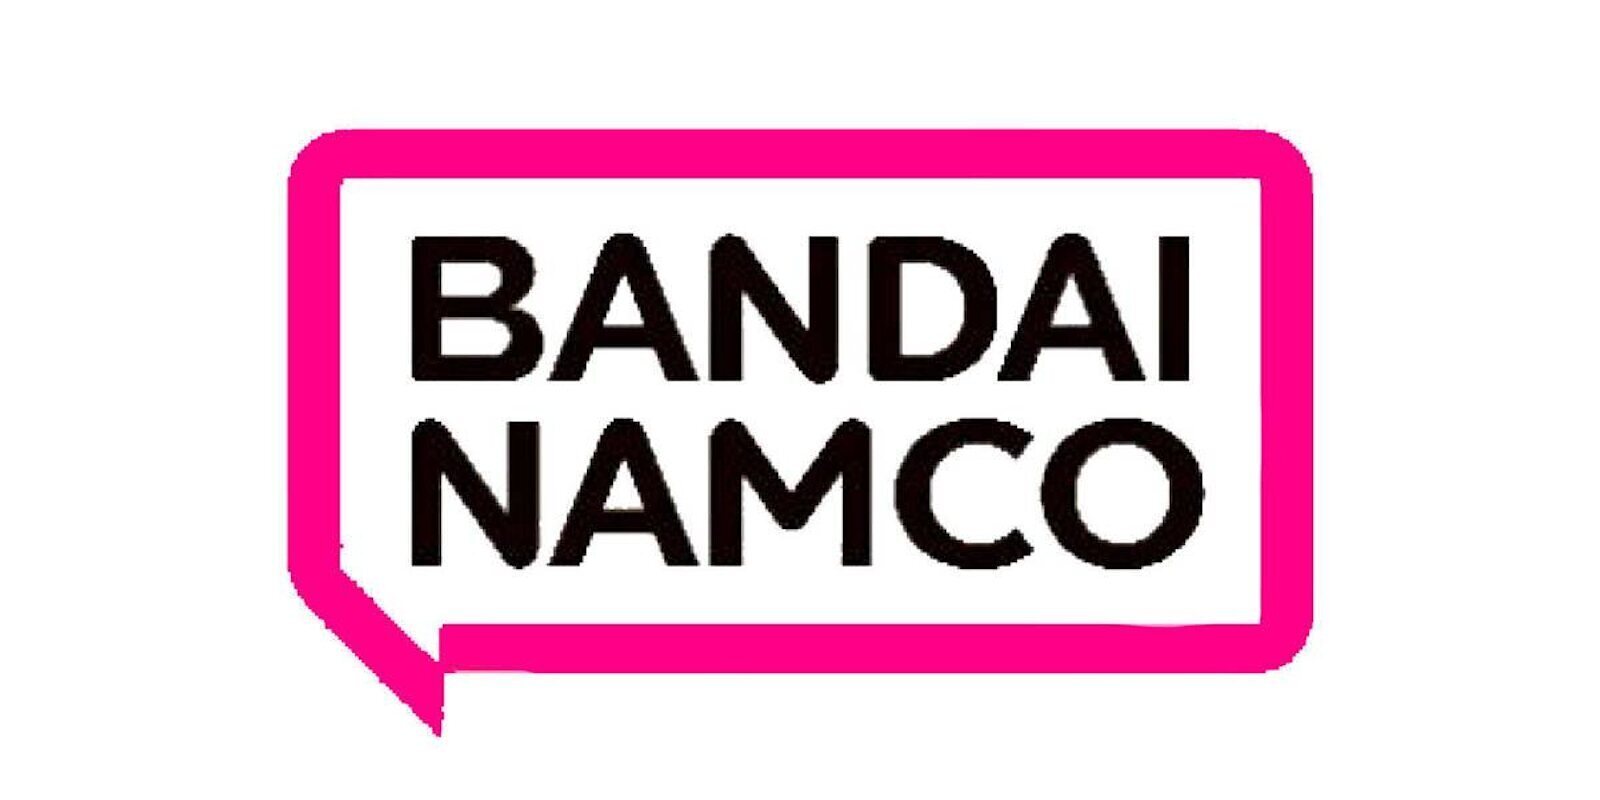 Bandai Namco está desarrollando un motor gráfico para hacer juegos muy ambiciosos